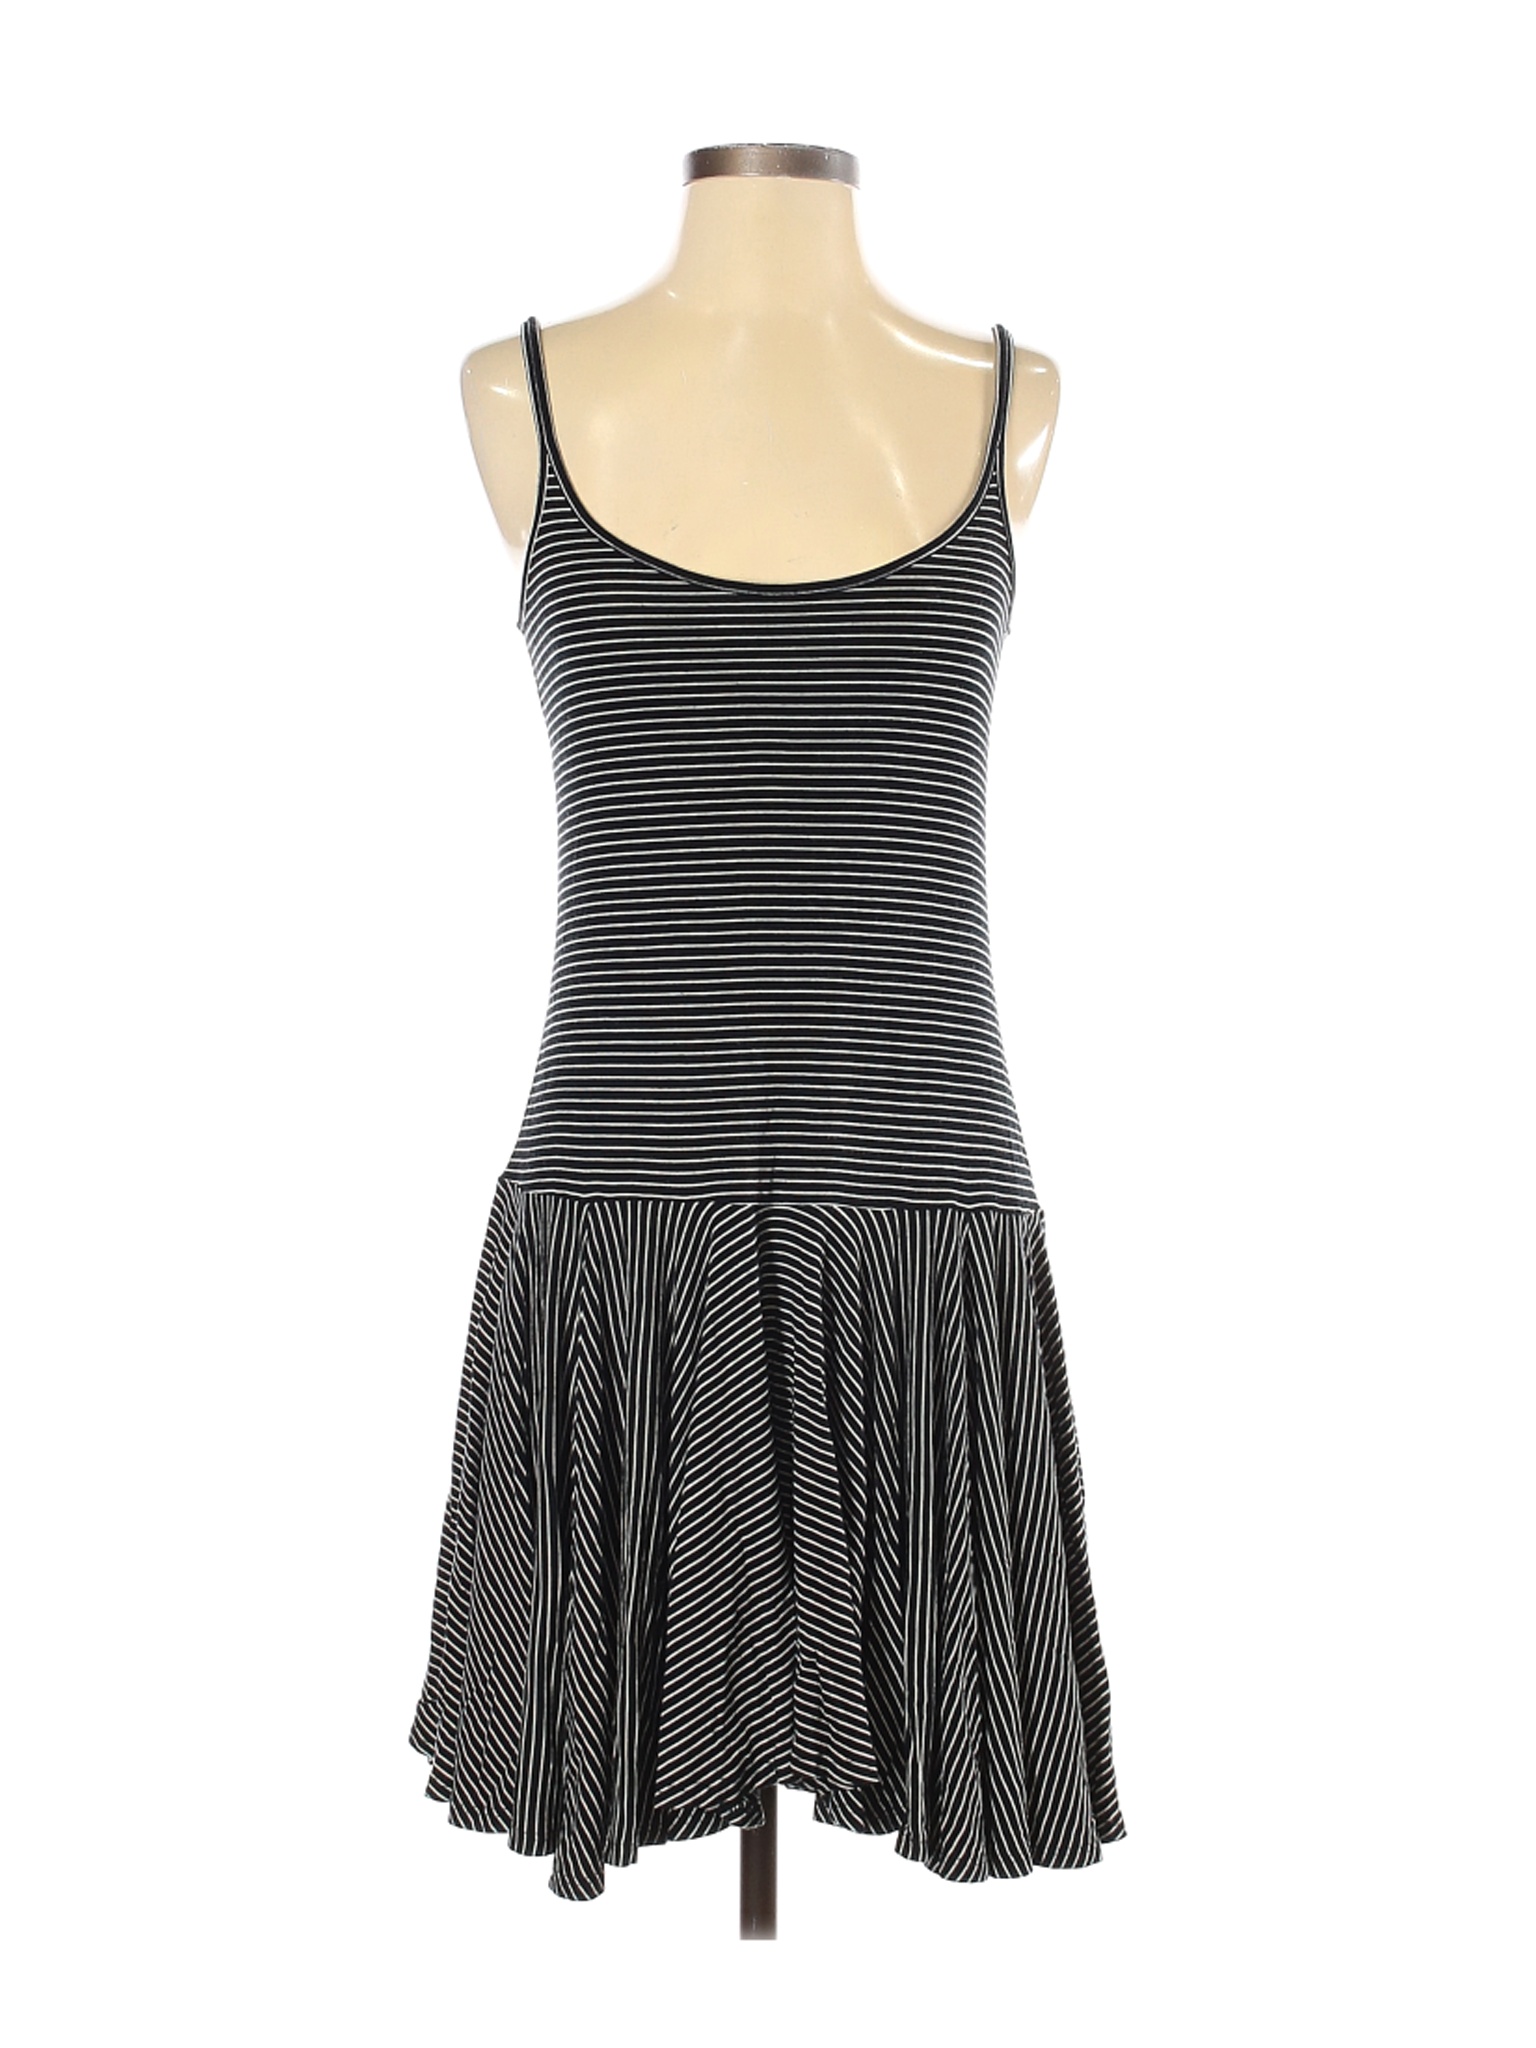 Polo by Ralph Lauren Women Black Casual Dress S | eBay